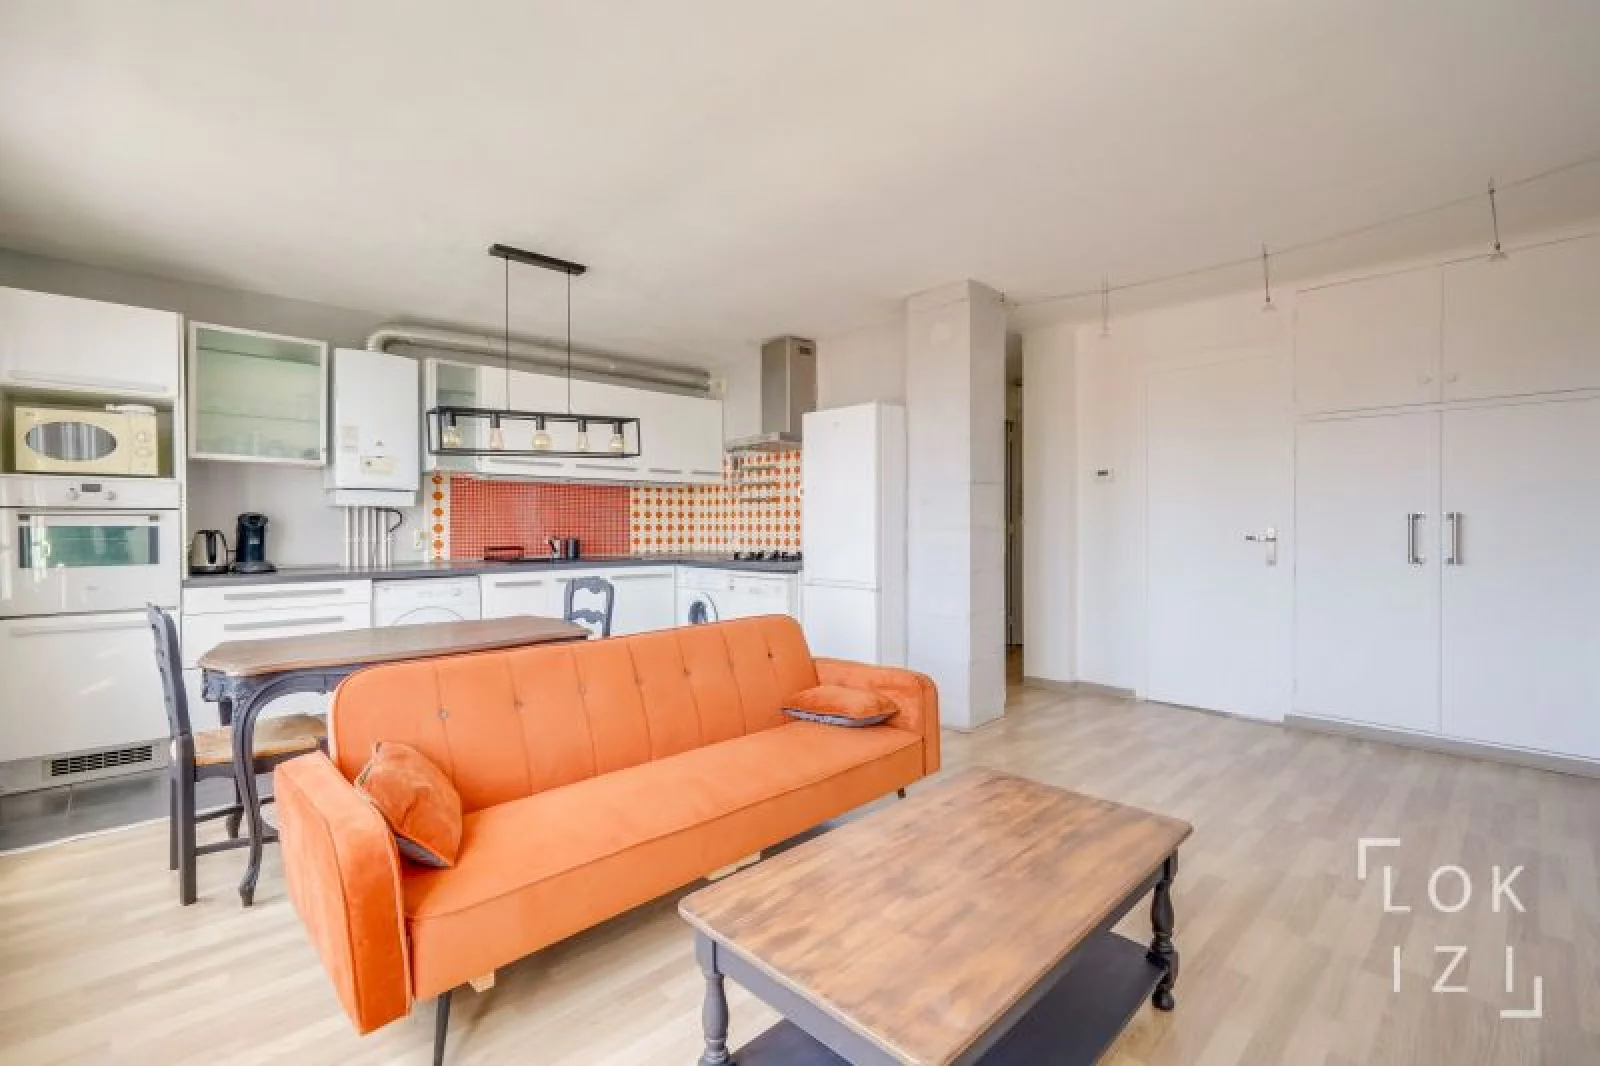 Location appartement meublé 3 pièces 54m² (Bordeaux - Chartrons)